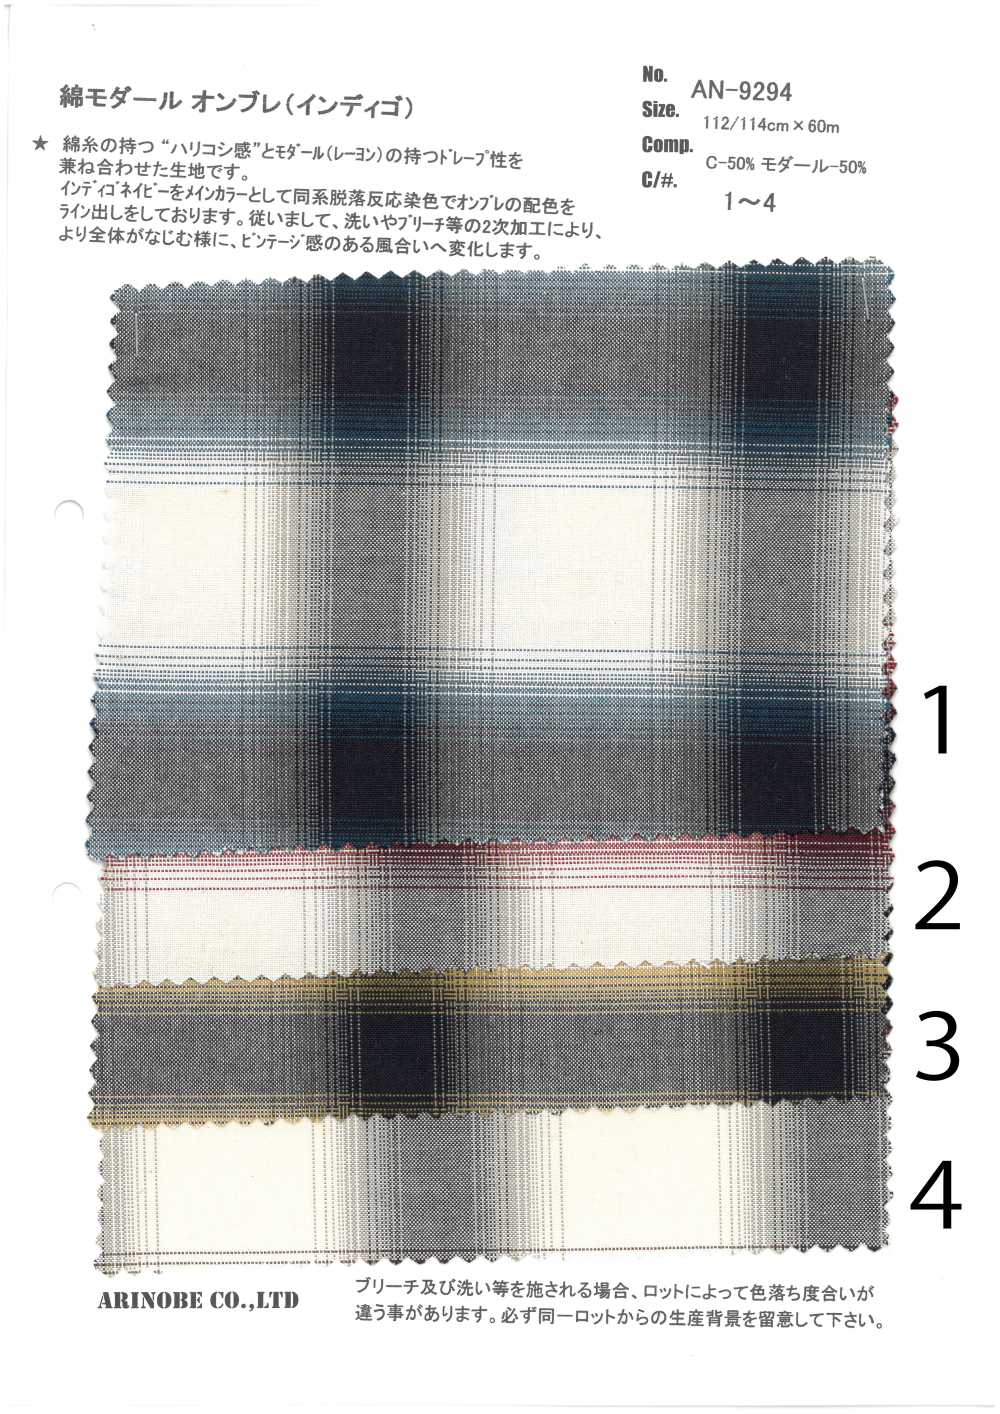 AN-9294 Indigo Cotton Modal Ombre[Textile / Fabric] ARINOBE CO., LTD.